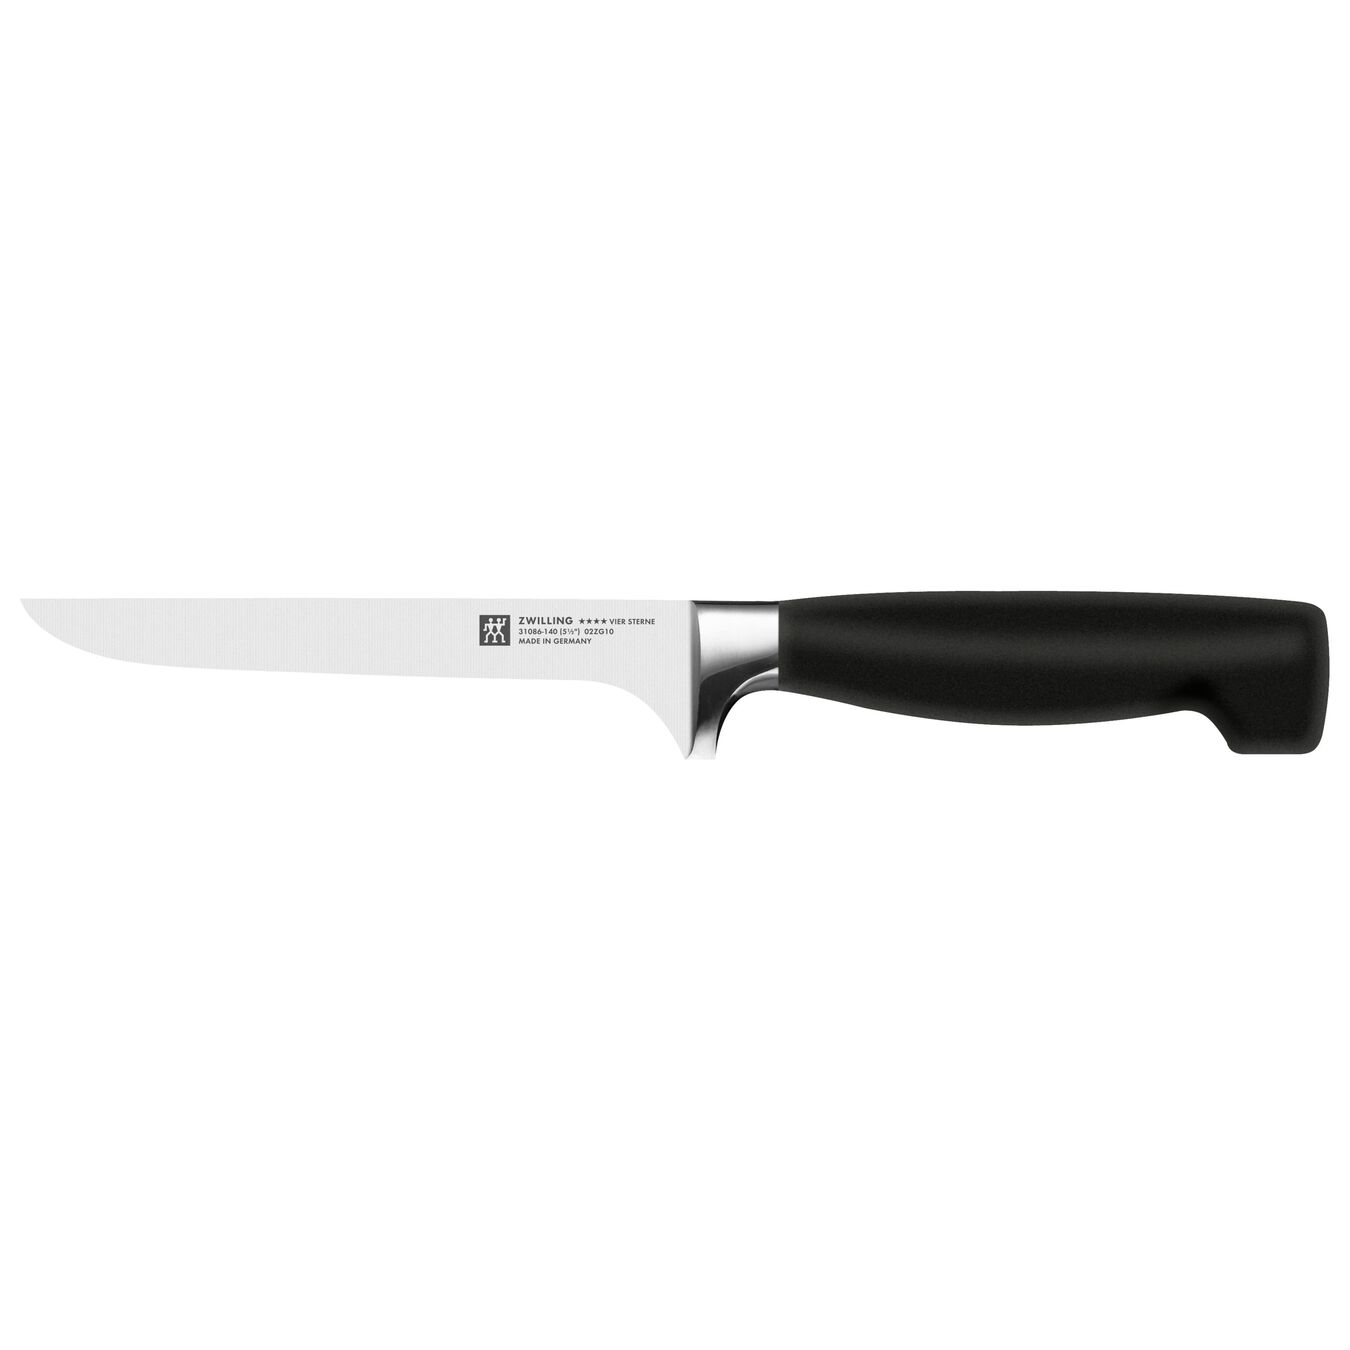 5.5-inch, Flexible Boning Knife,,large 1